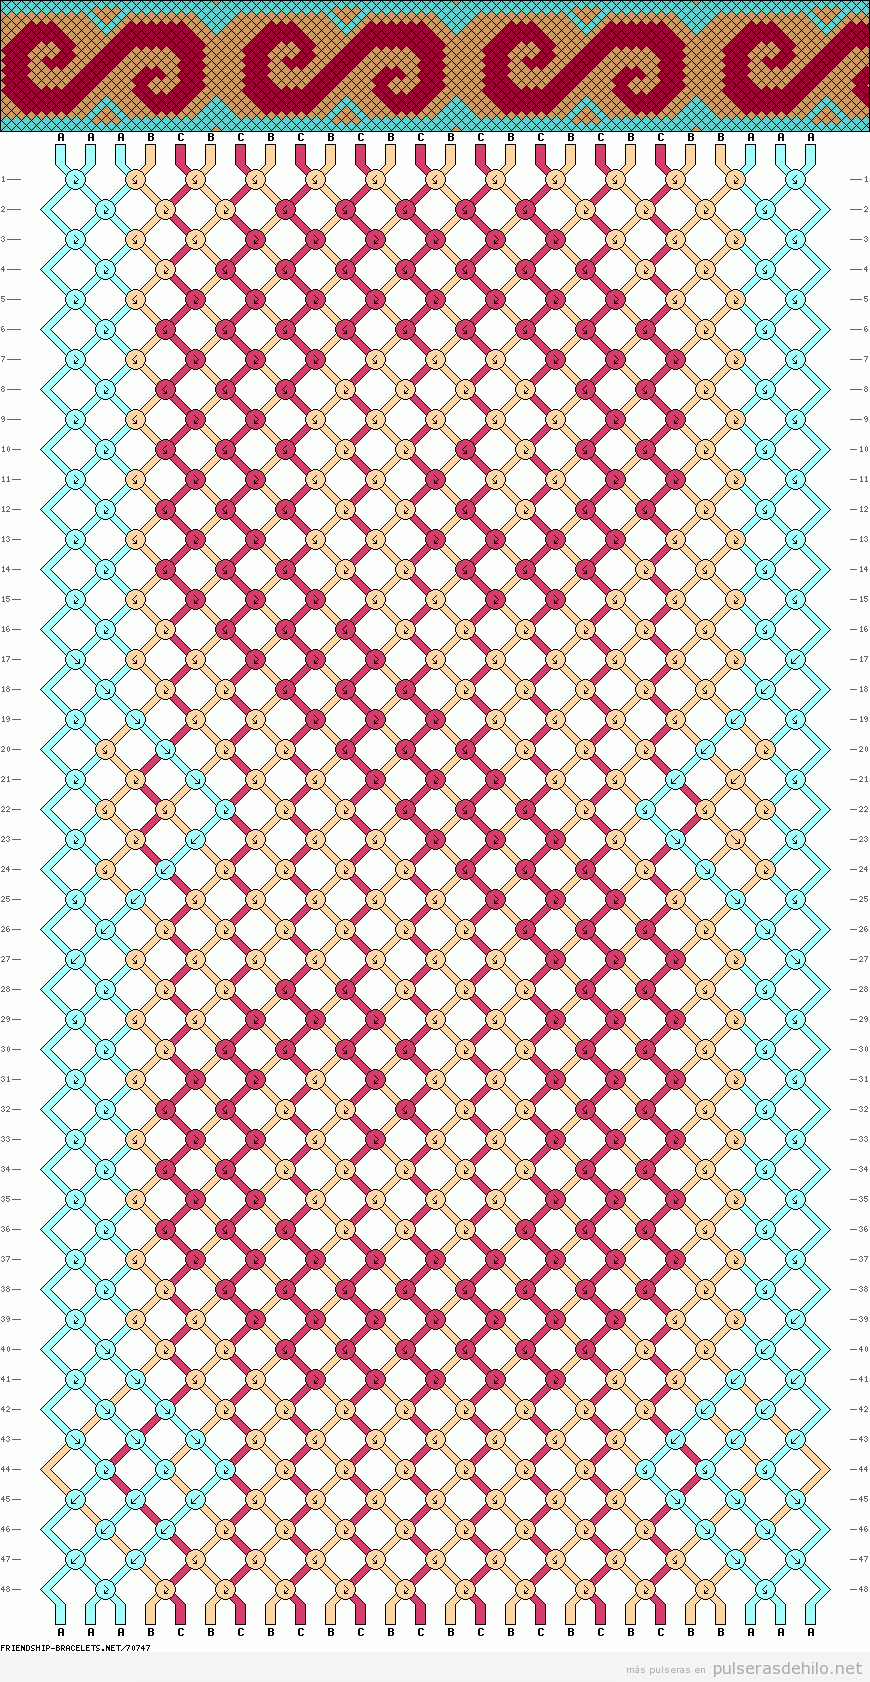 Diagrama, esquema o patrón para realizar pulsera de hilo con forma de ola y remolino